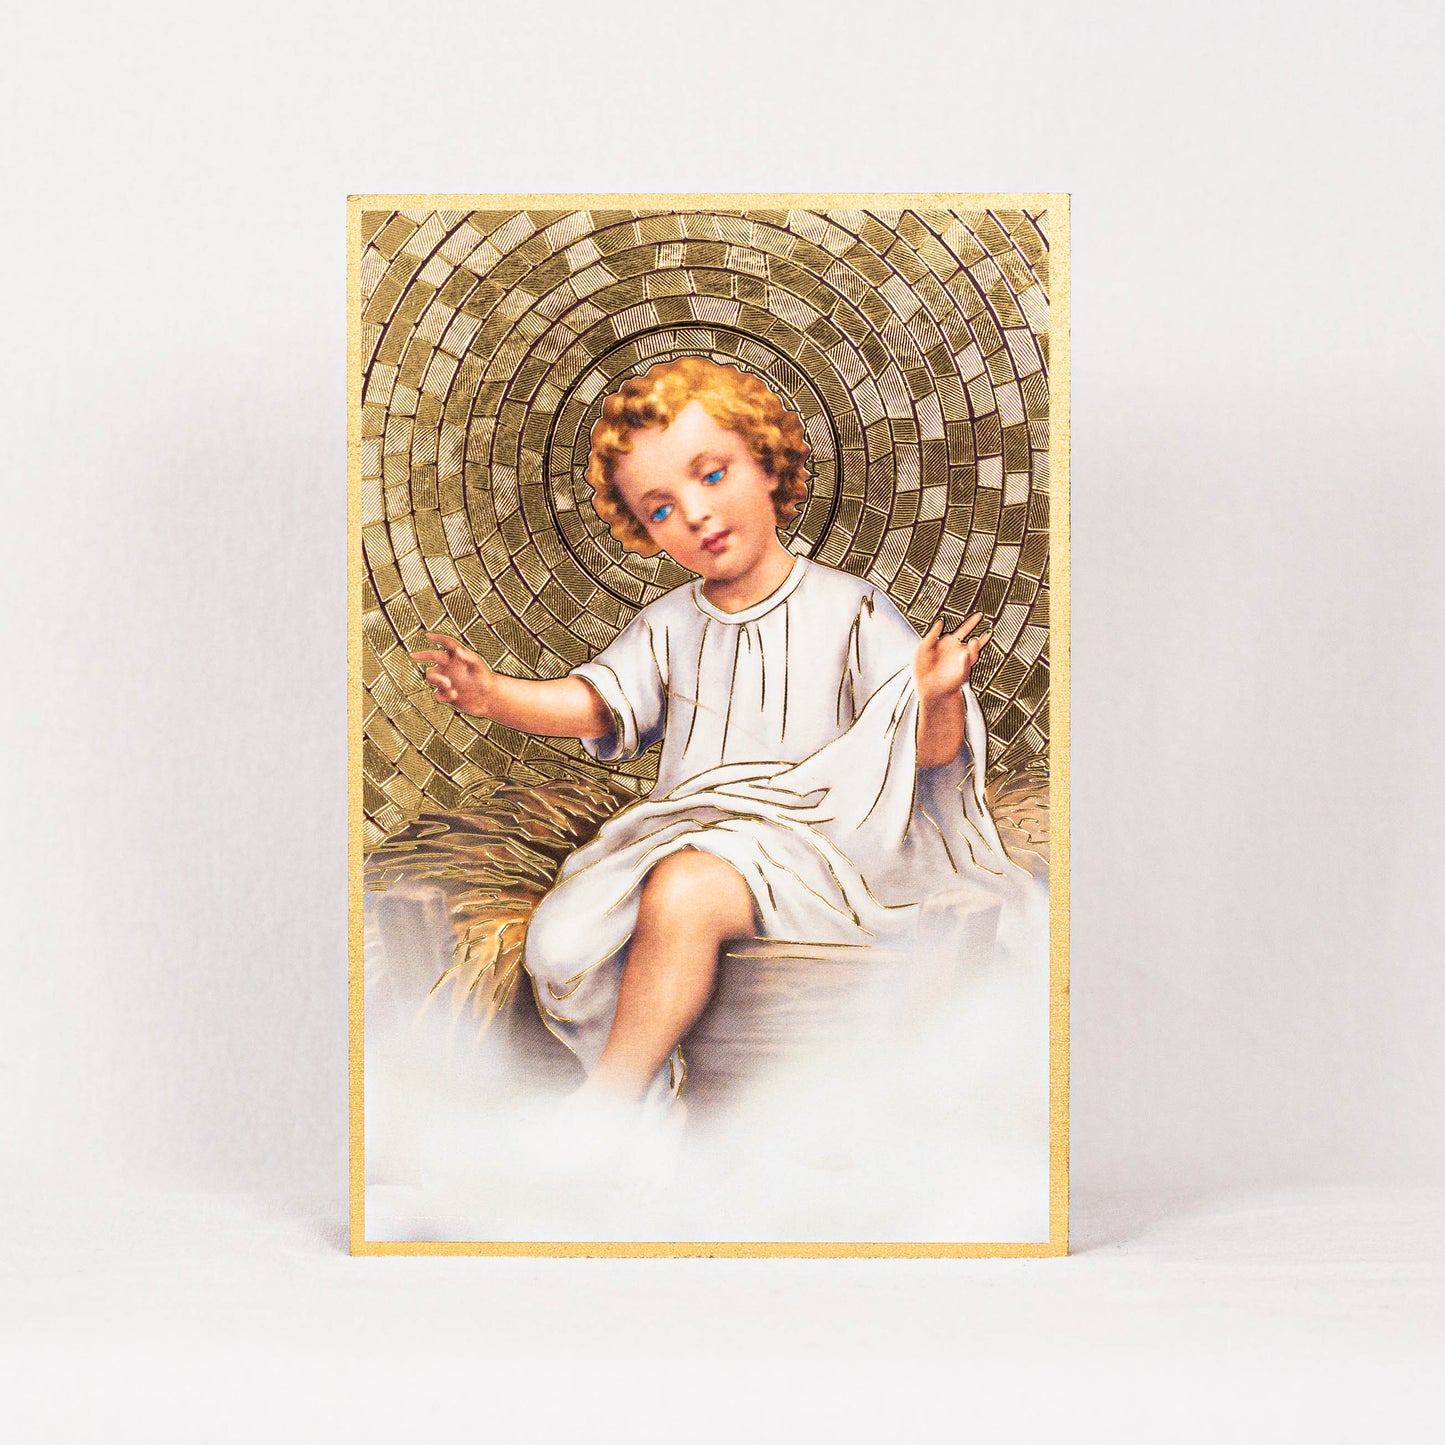 4" x 6" Baby Jesus Gold Foil Mosaic Plaque